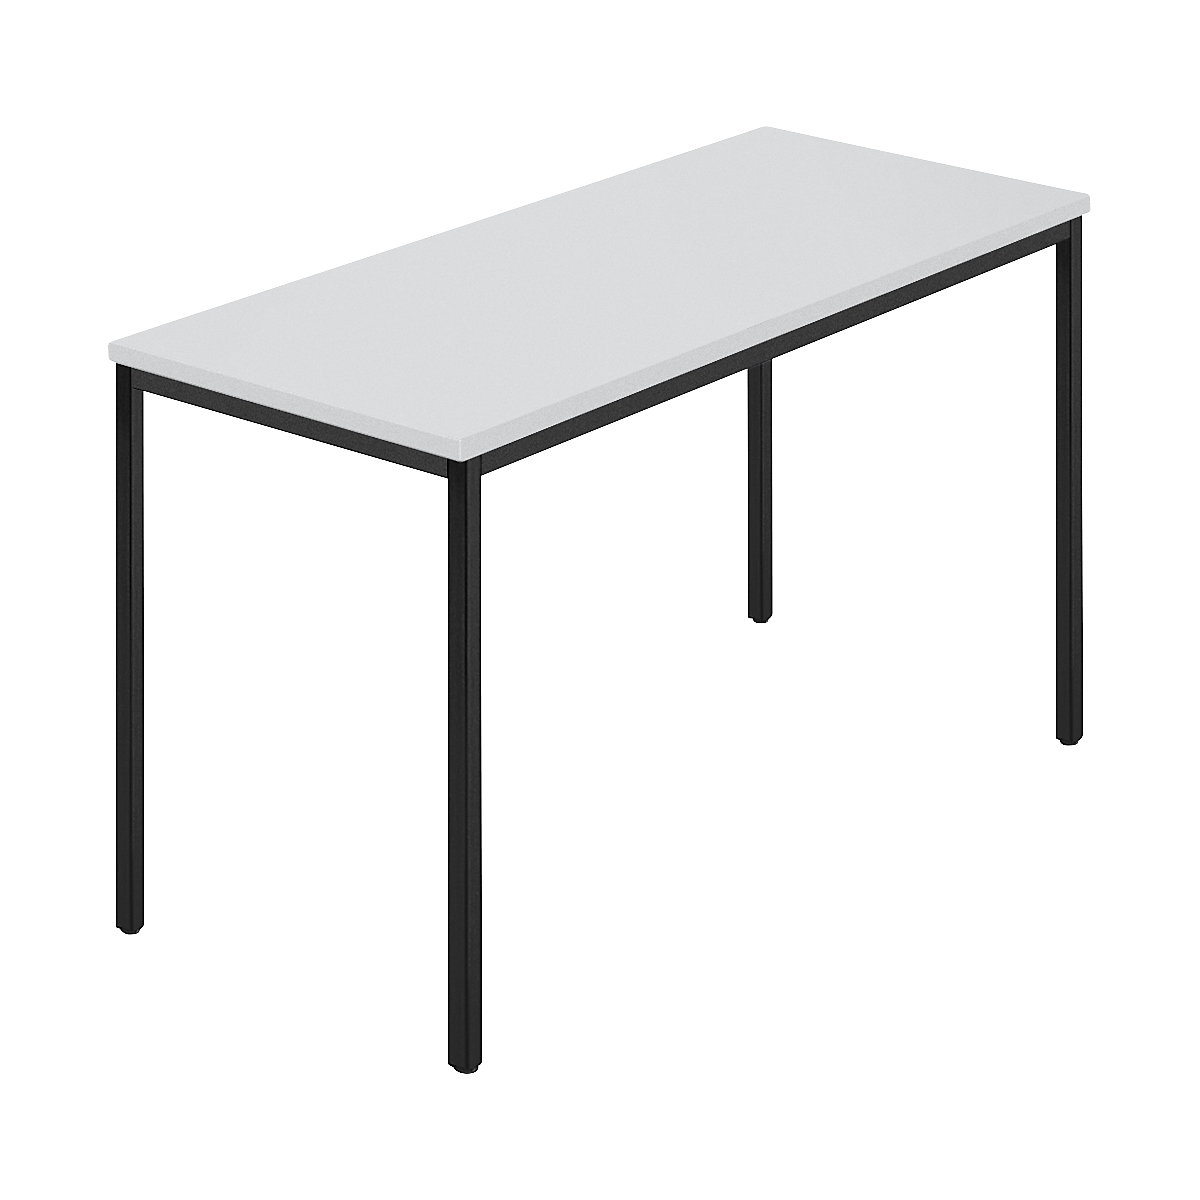 Rechthoekige tafel, vierkante buis met coating